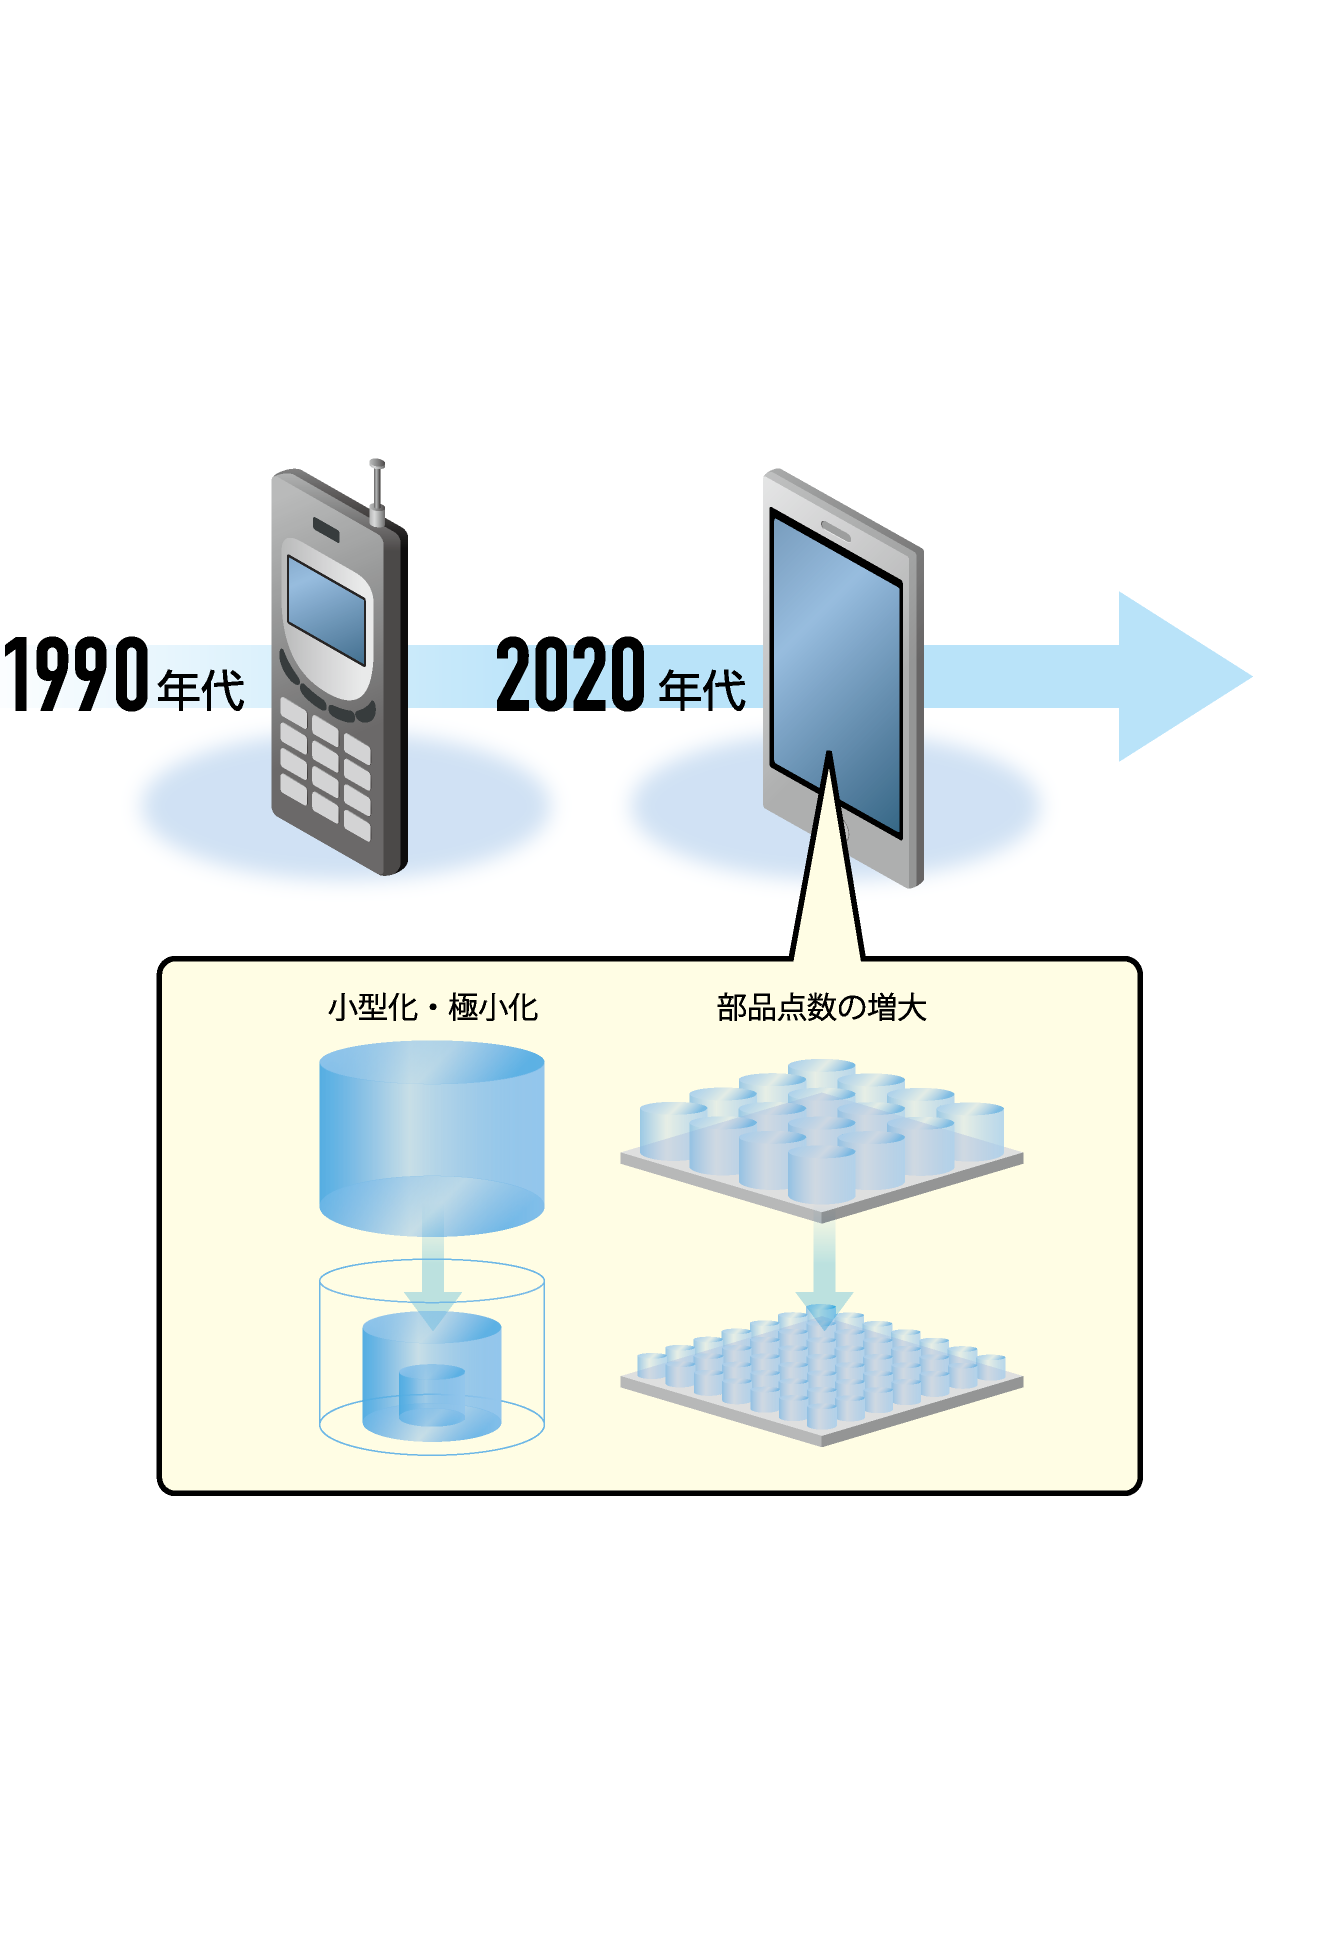 通信システムの進化